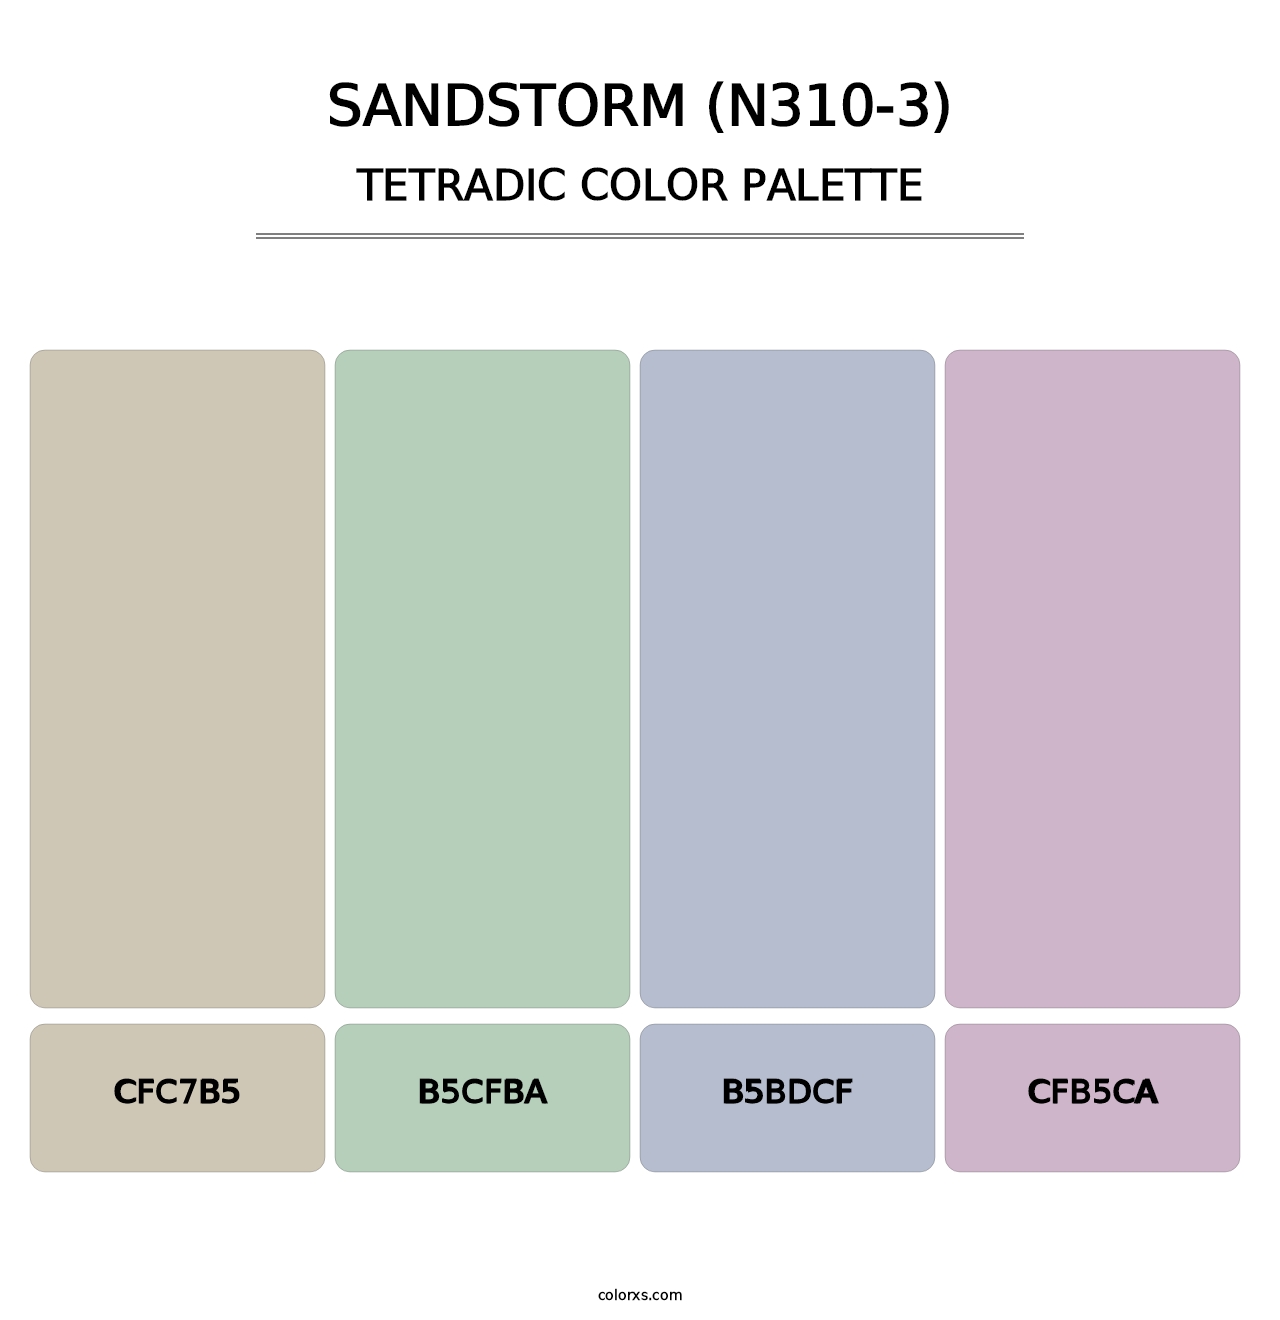 Sandstorm (N310-3) - Tetradic Color Palette